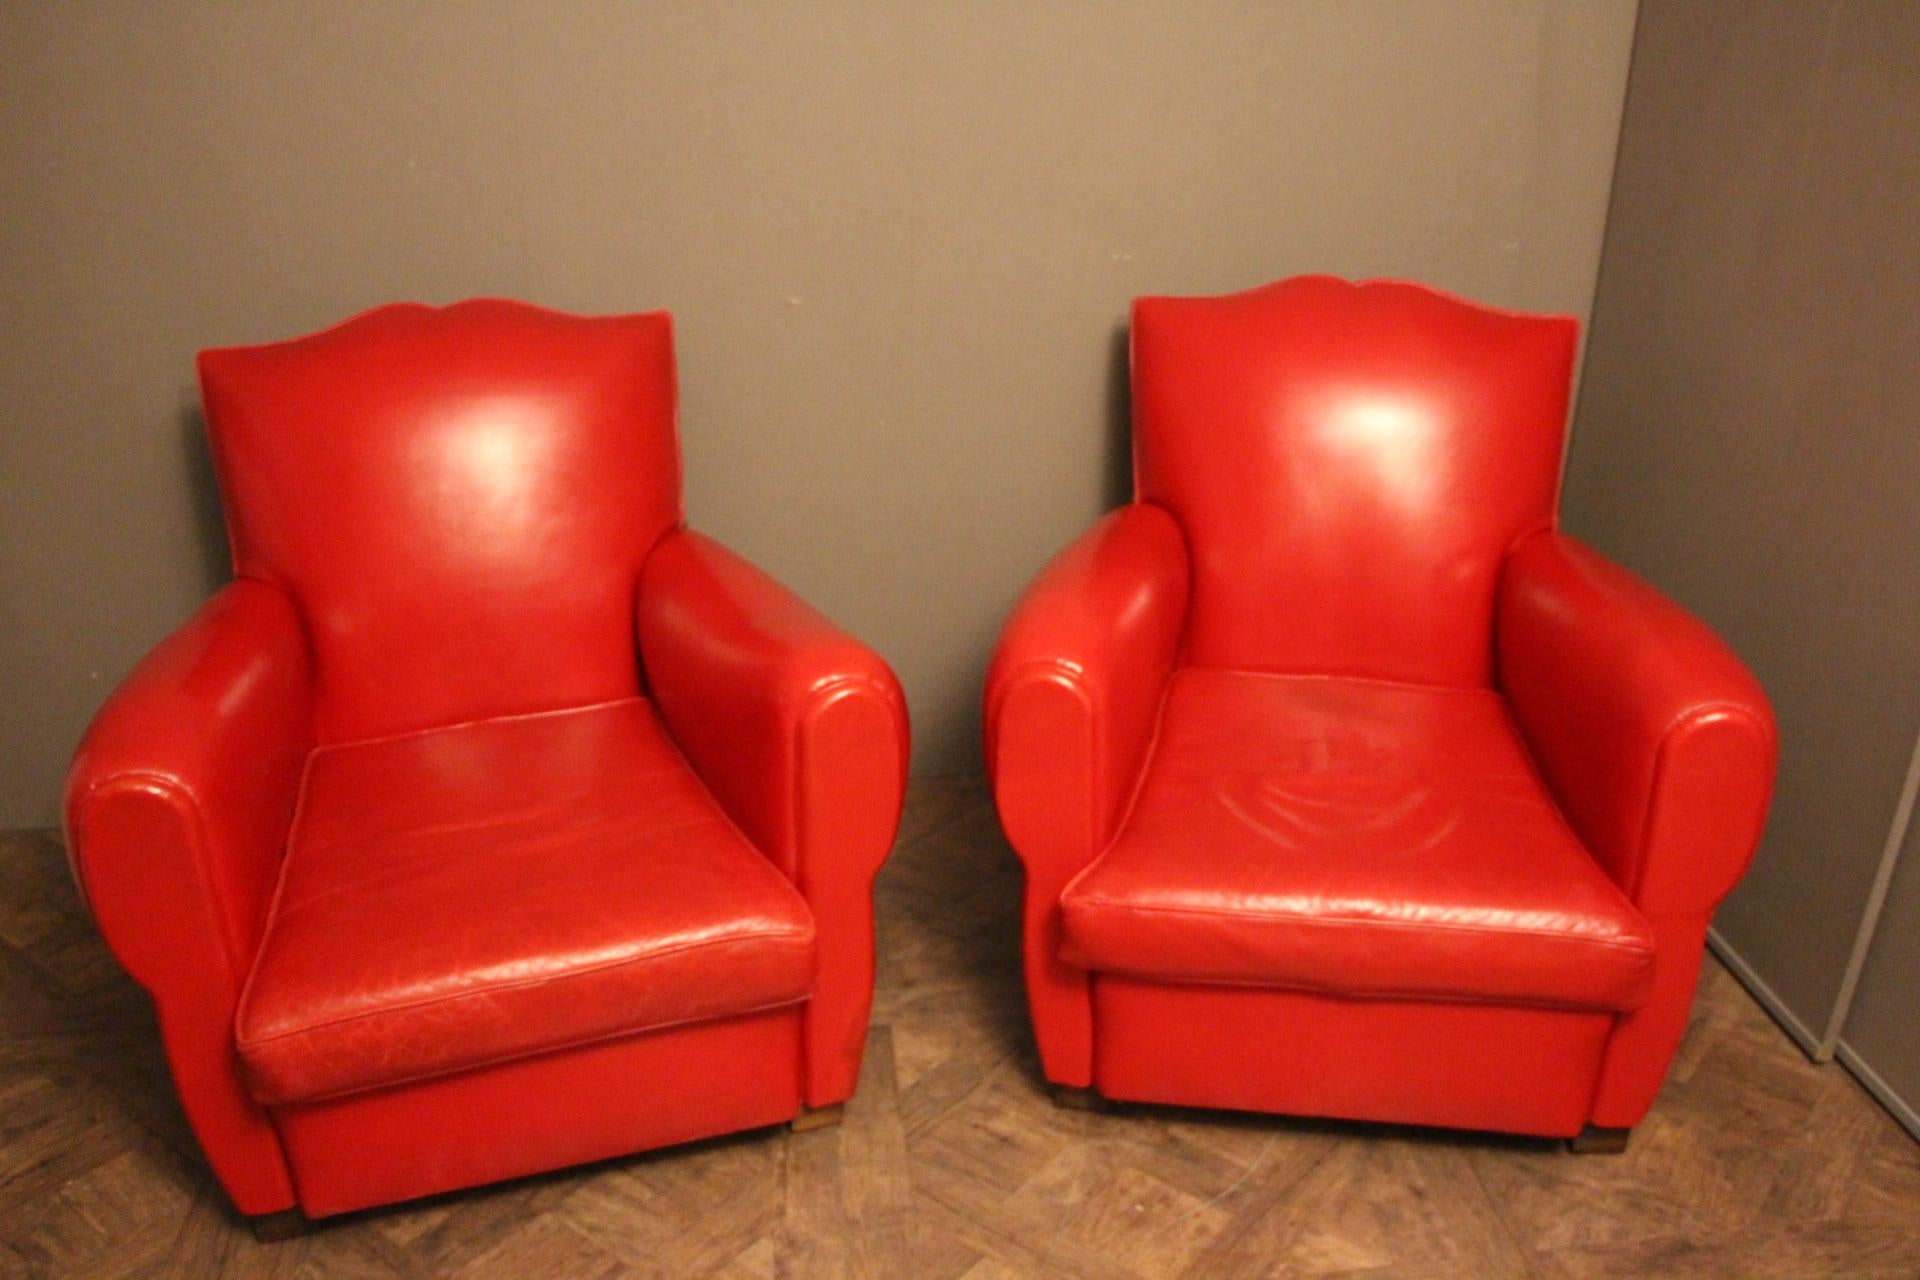 Dieses Paar französischer Clubsessel hat eine leuchtend mohnrote Farbe und eine sehr schöne schnurrbartförmige Rückenlehne.
Separate Sitzkissen. Rote Lederbesätze und Nieten auf dem Rücken.
Sie sind vollkommen original und in sehr gutem Zustand.